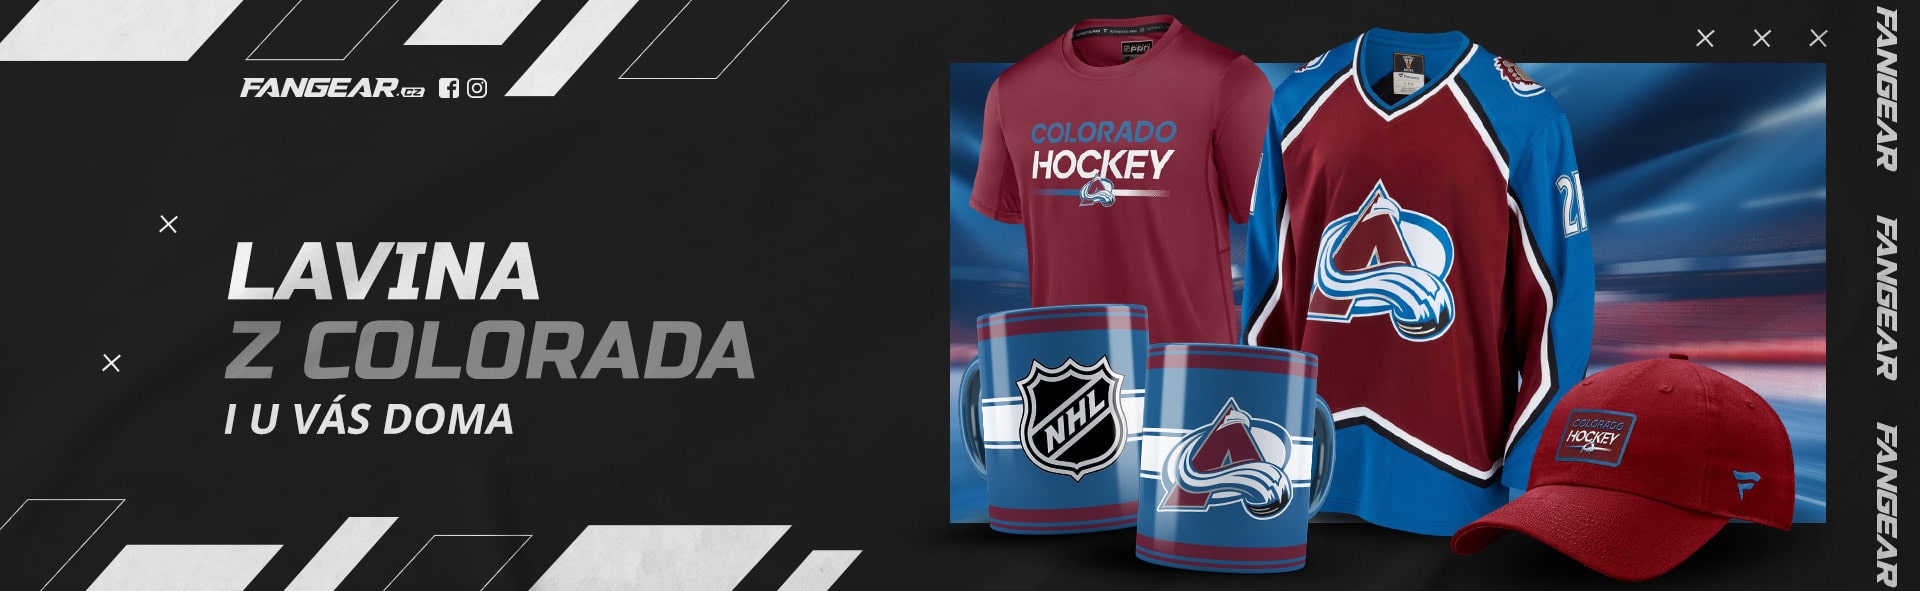 Fandíte Colorado Avalanche? Máme pro vás kšiltovky, trička, mikiny i dresy v klubových barvách s velkým logem týmu z NHL.